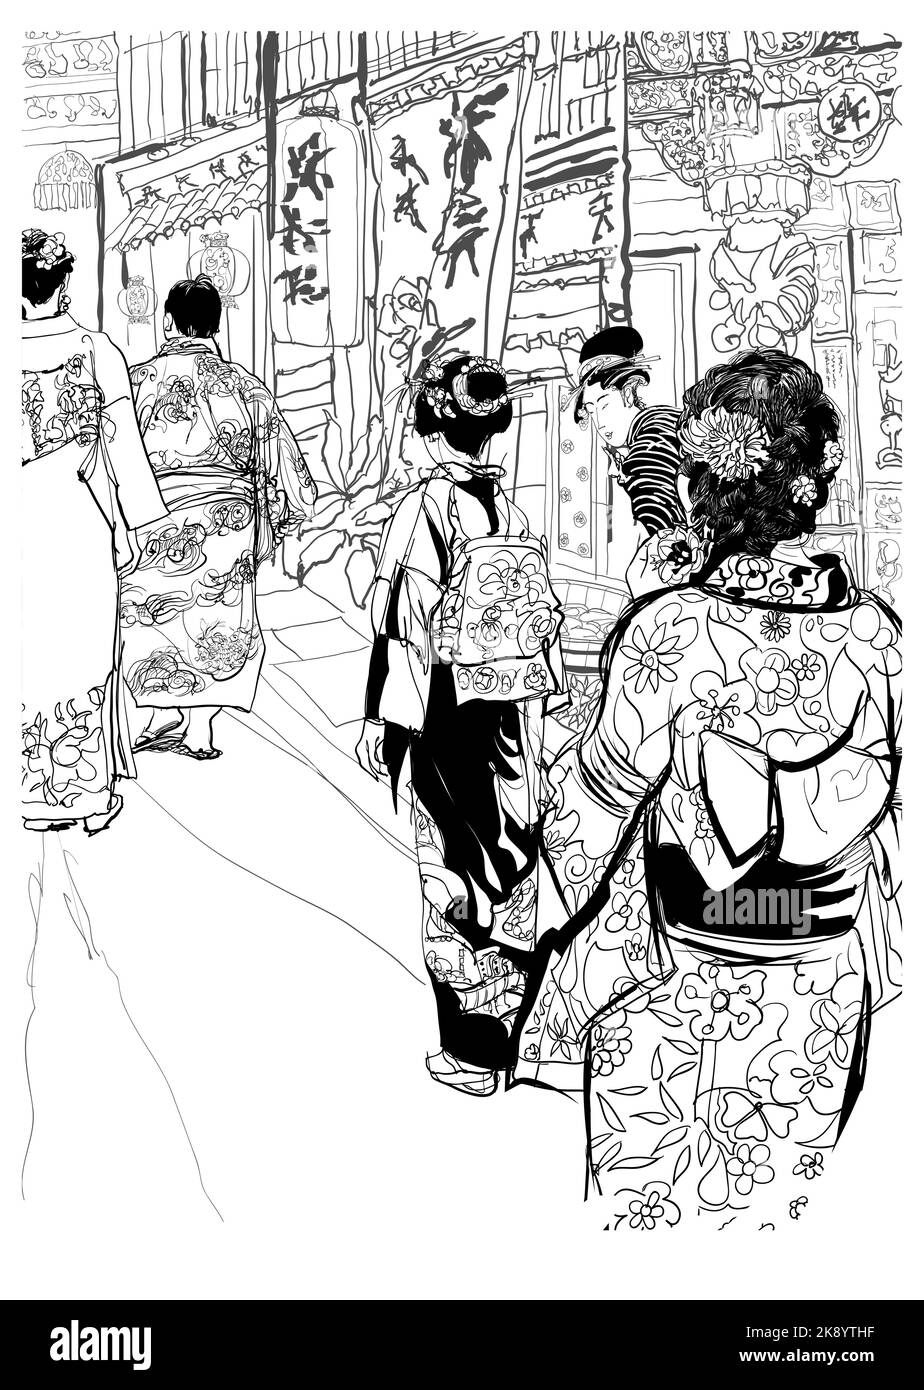 Japon, rue au japon avec des gens dans les vêtements traditionnels - illustration vectorielle (les caracters japonais sont faux - pas de sens) (idéal pour l'impression, pos Illustration de Vecteur